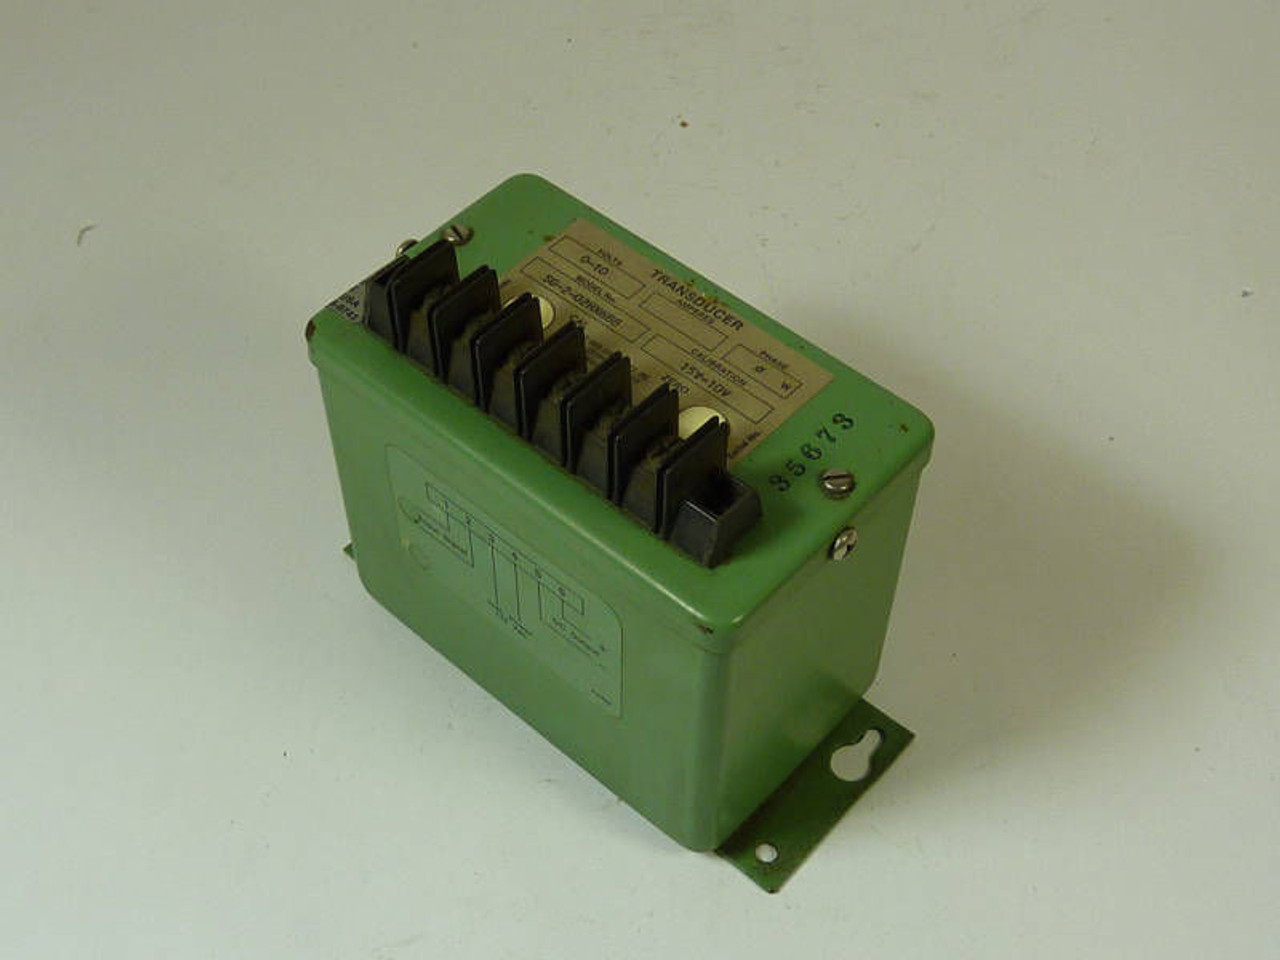 Ohio Semitronics Transducer 0-10V SG-2-02 HX688 USED